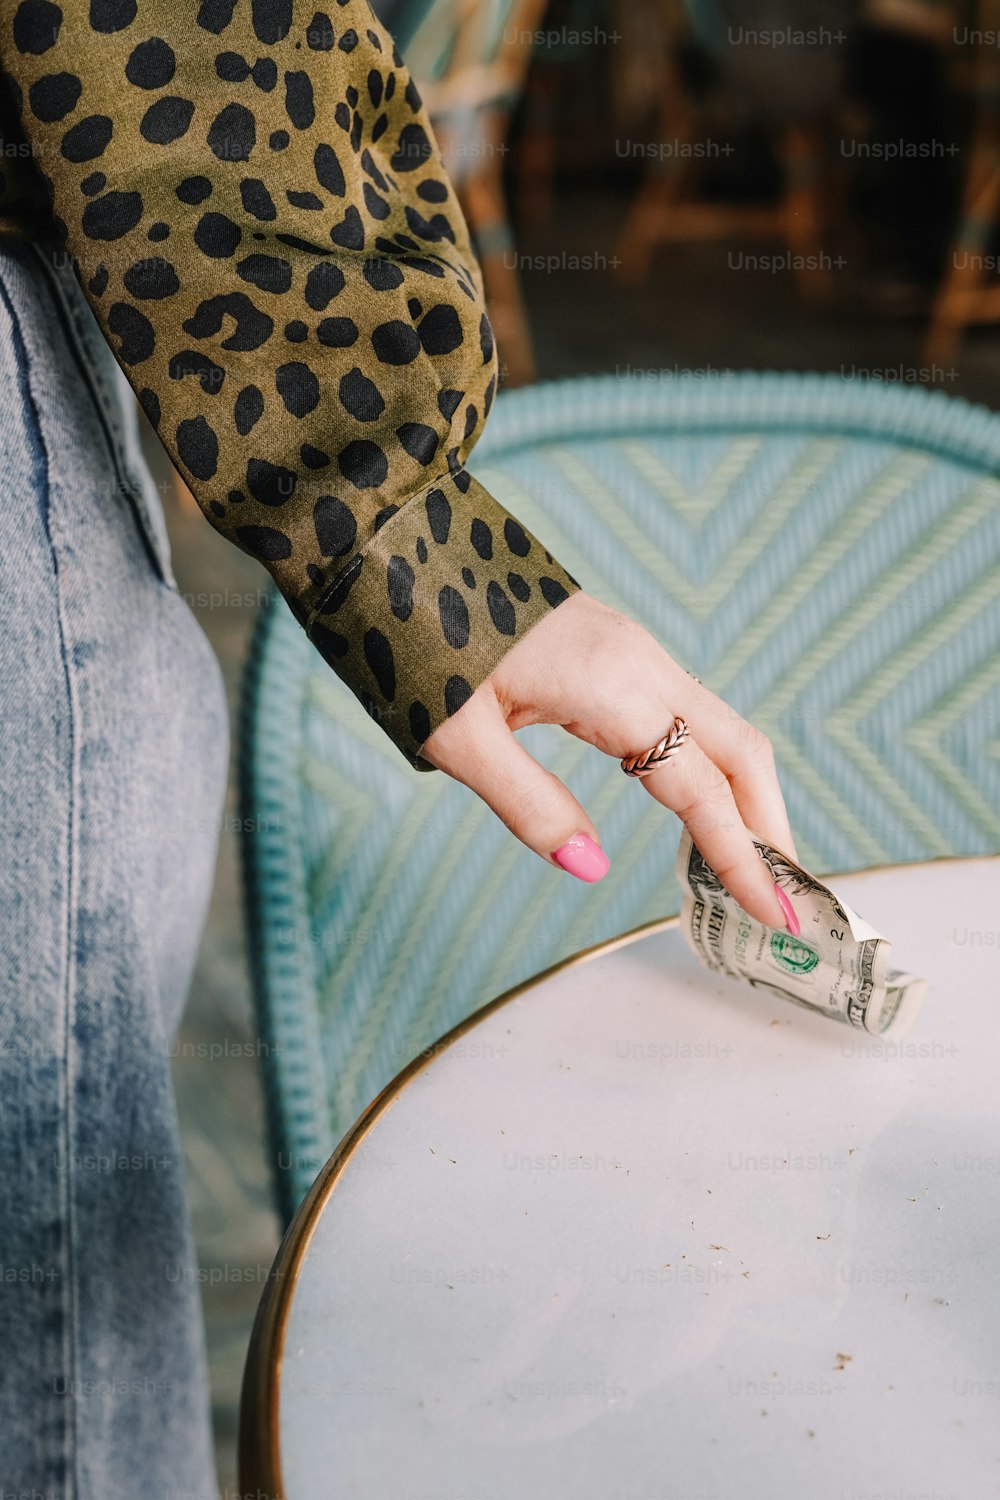 La main d’une femme tendant la main vers une pile d’argent